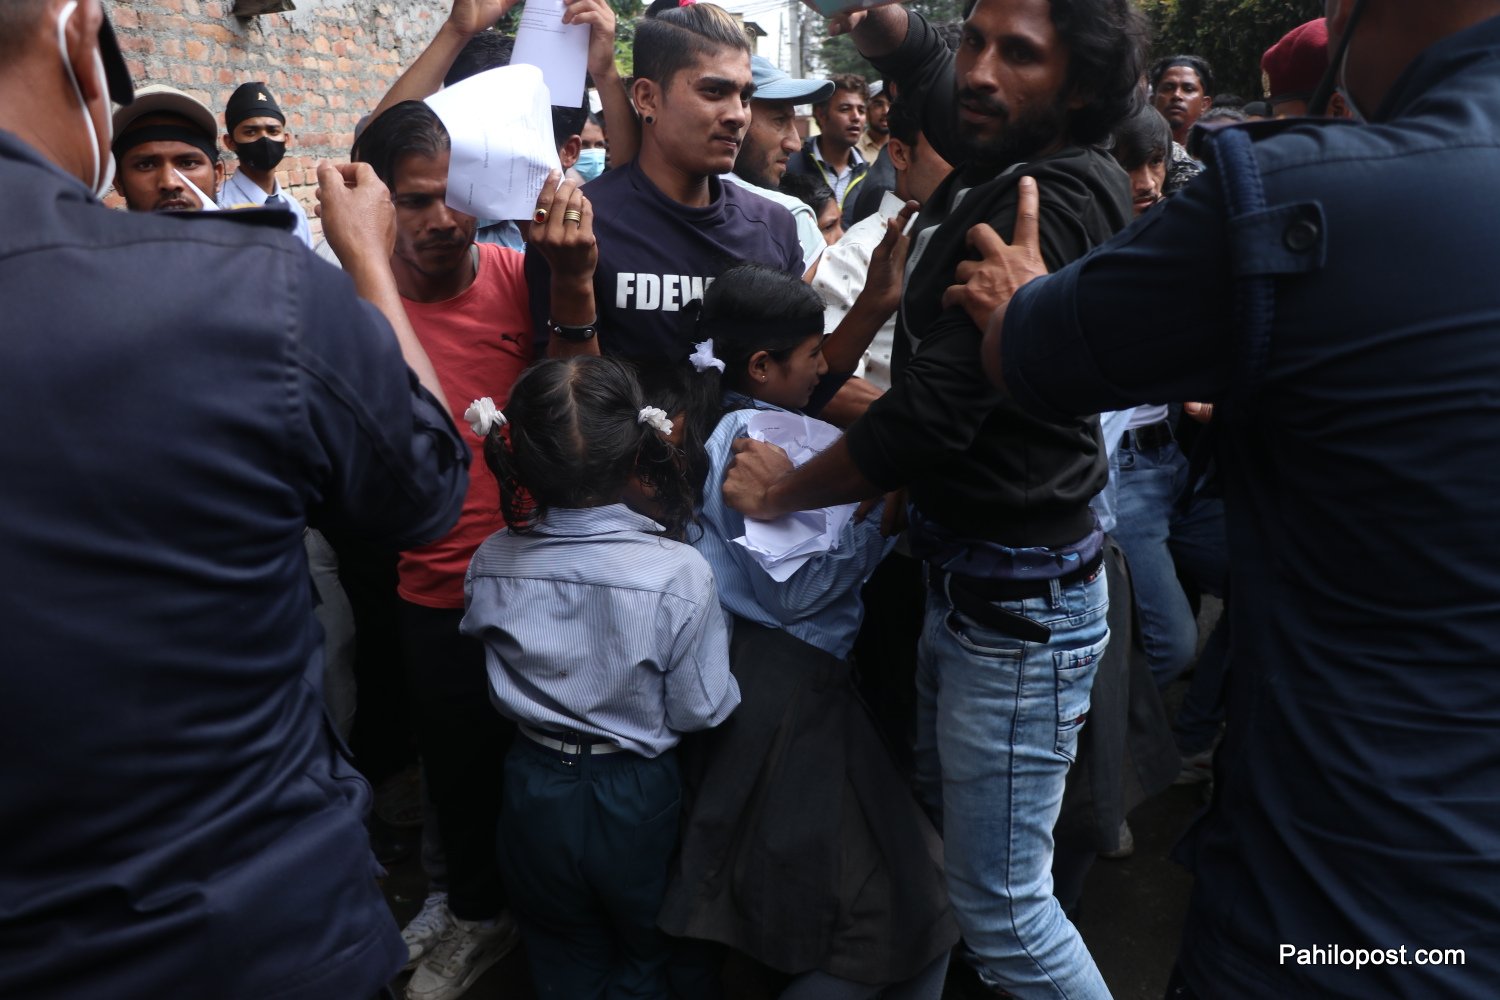 काठमाडौंमा बढ्दो रोहिंग्याको संख्याले सुरक्षामा चुनौती, सरकार भन्छ : शरणार्थी होइनन् अवैध आप्रवासी, नियन्त्रण गर्छौं